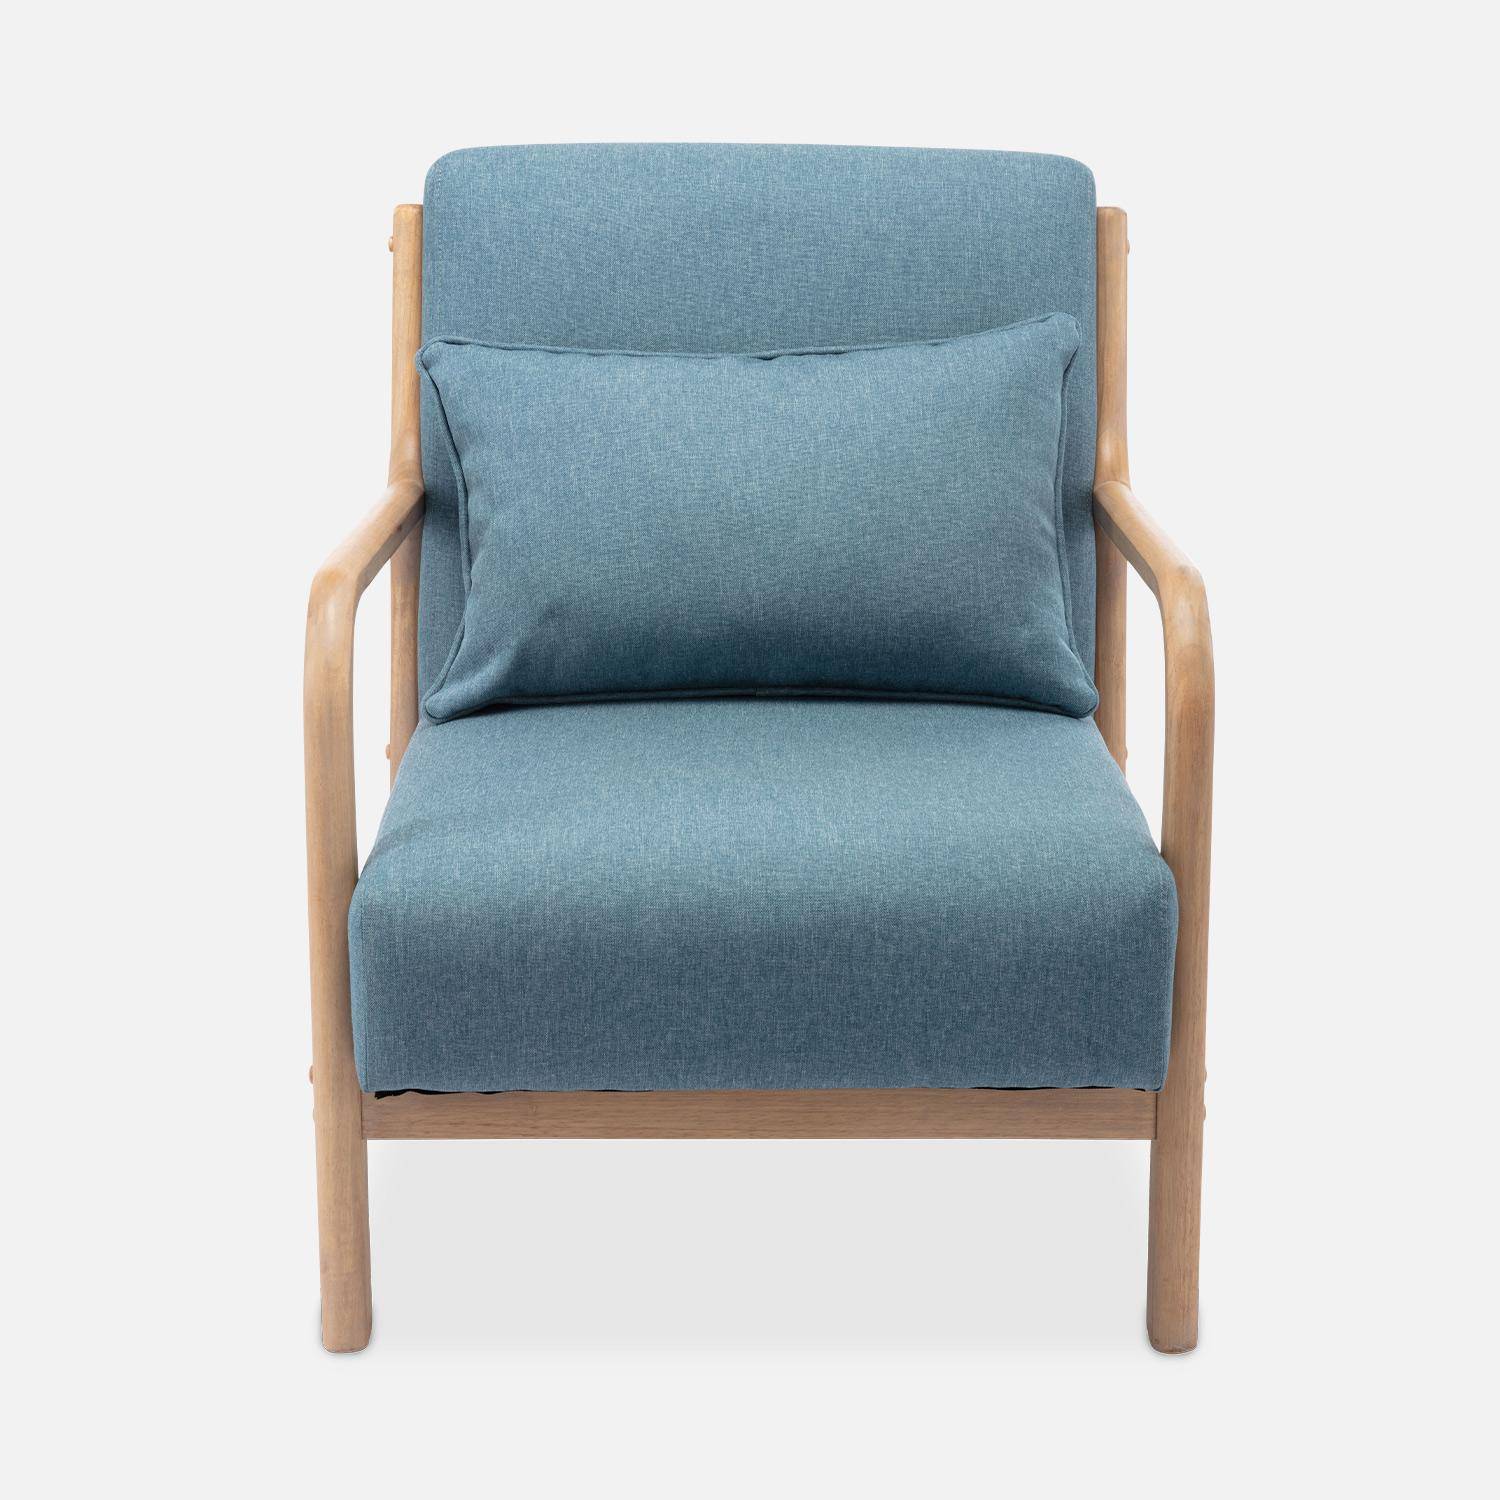 Sillón de diseño en madera y tela, 1 asiento recto fijo, patas de compás escandinavas, asiento cómodo, armazón de madera maciza, azul,sweeek,Photo5